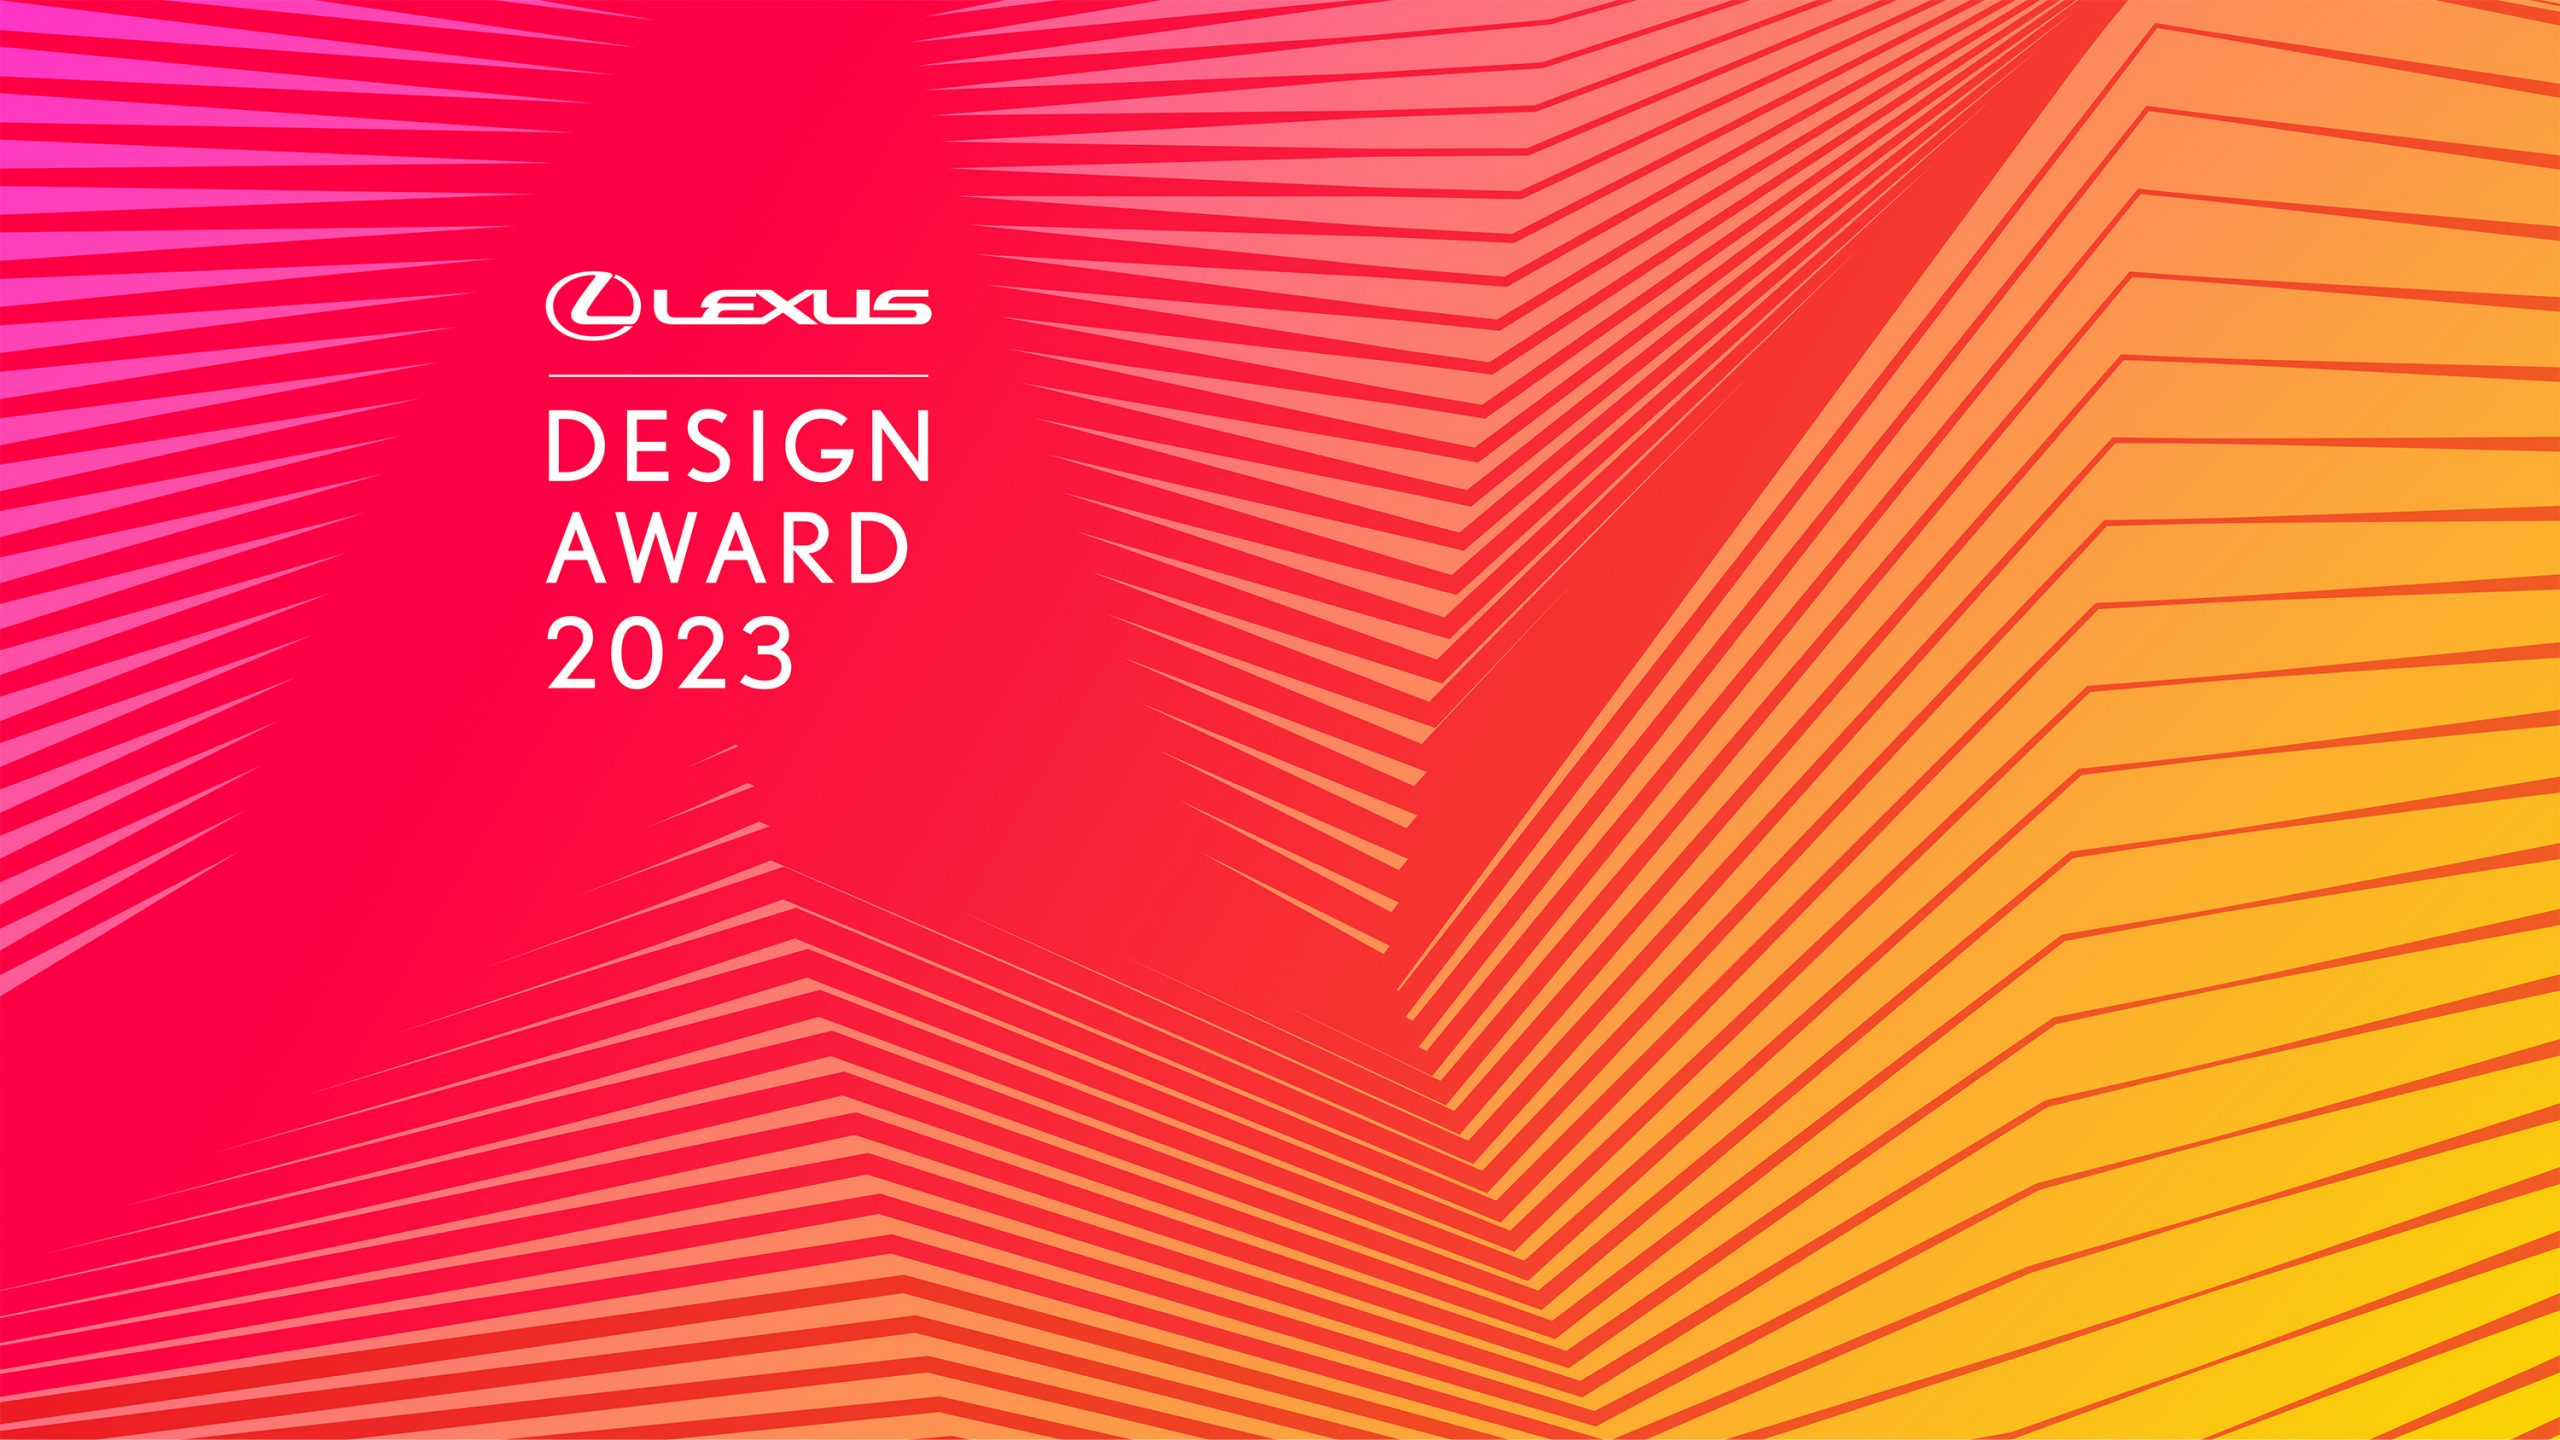 Galería de Imágenes: Lexus Anuncia la Convocatoria de Candidaturas para el Premio de Diseño Lexus 2023